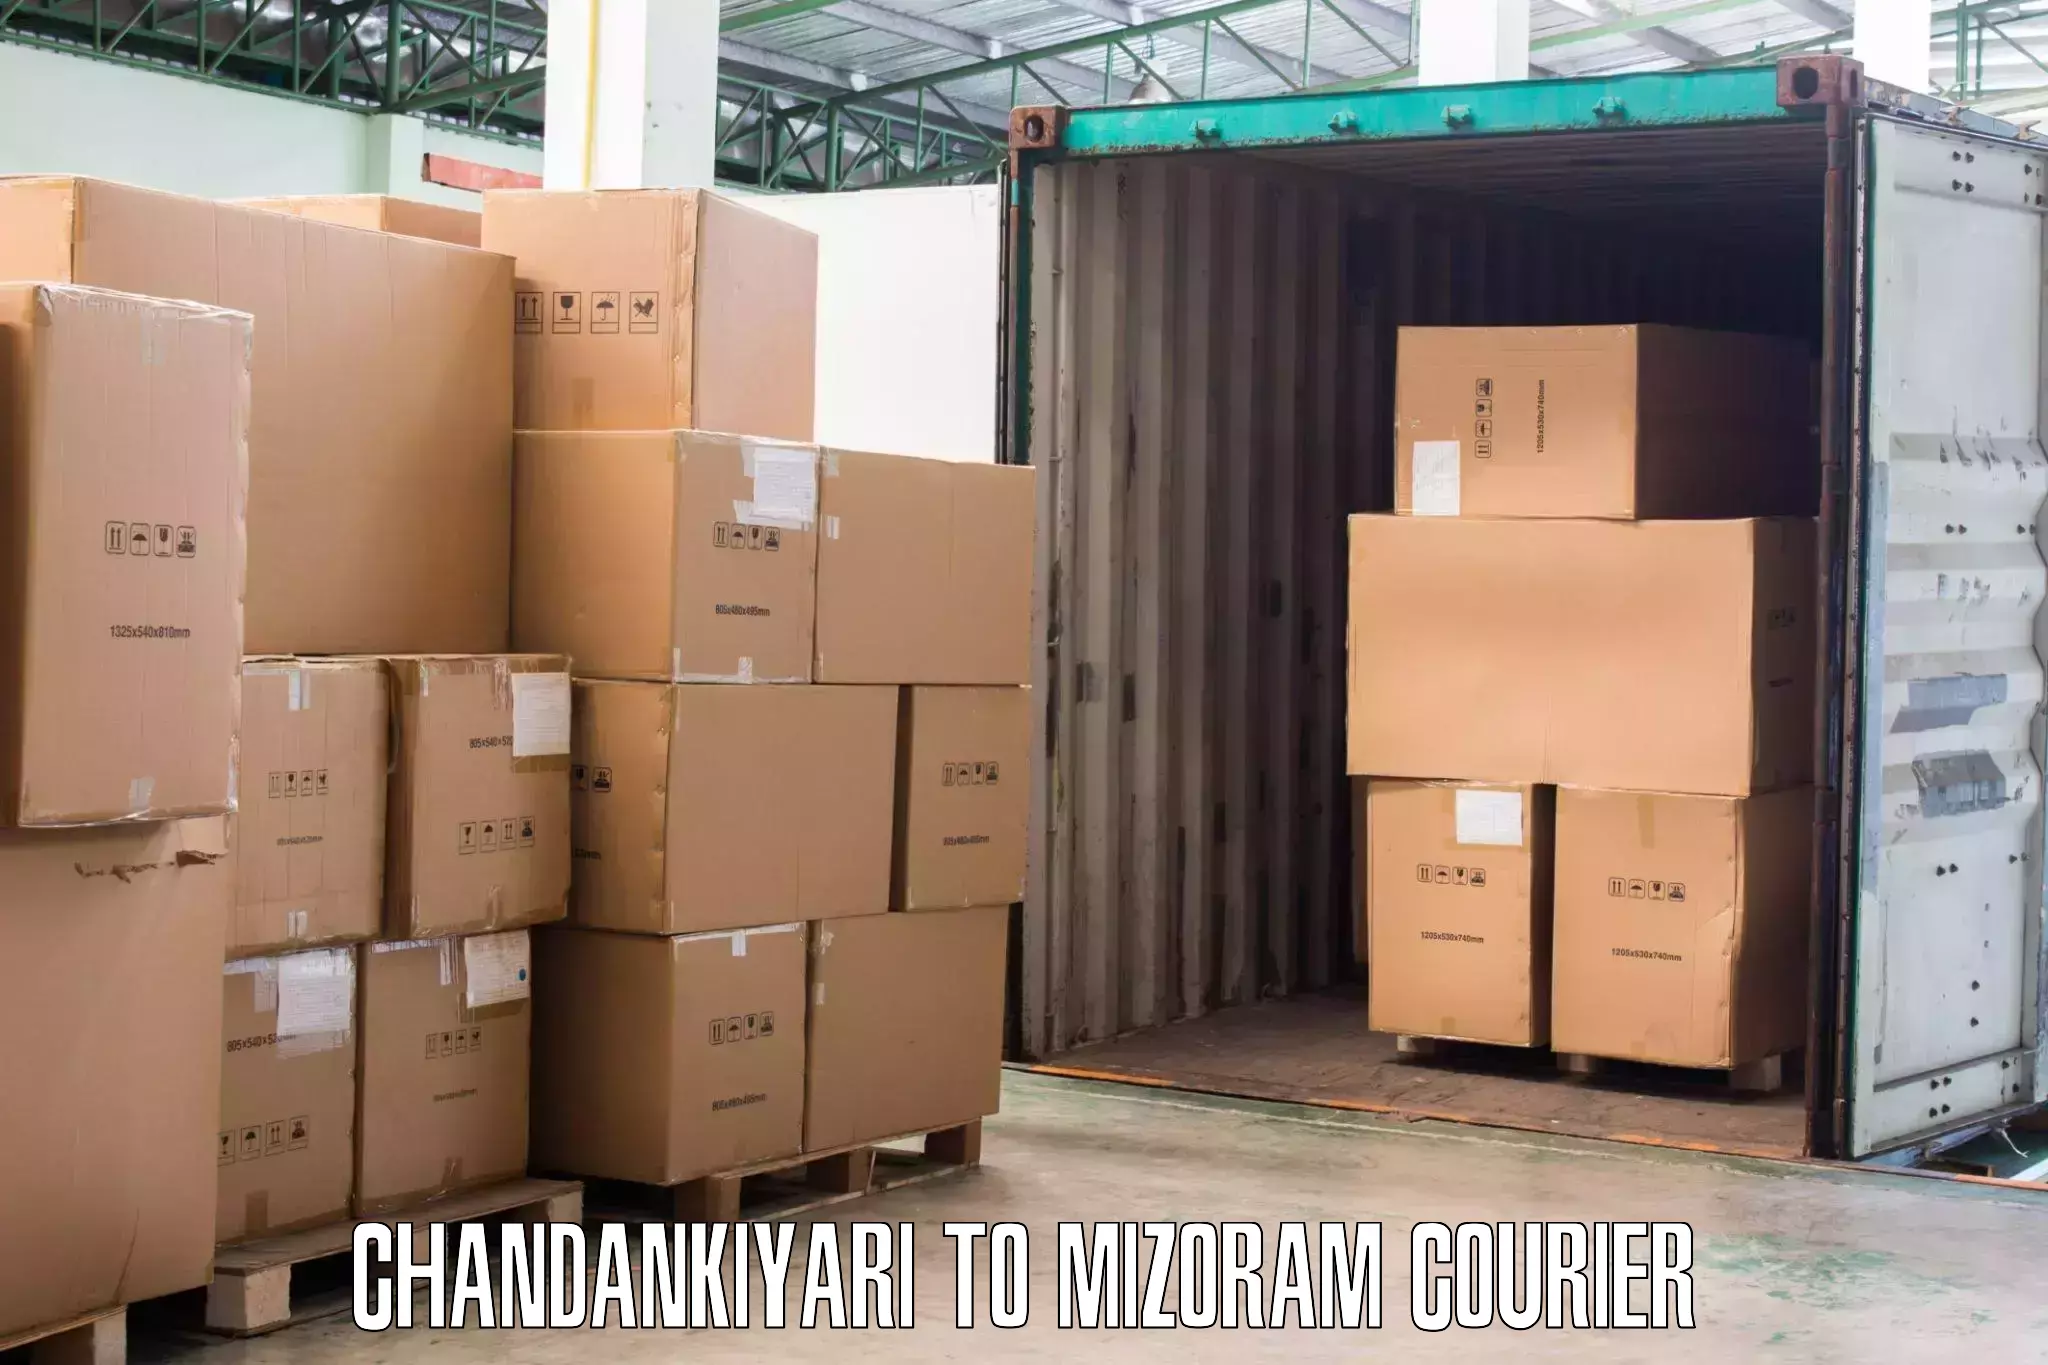 Furniture moving experts Chandankiyari to Mizoram